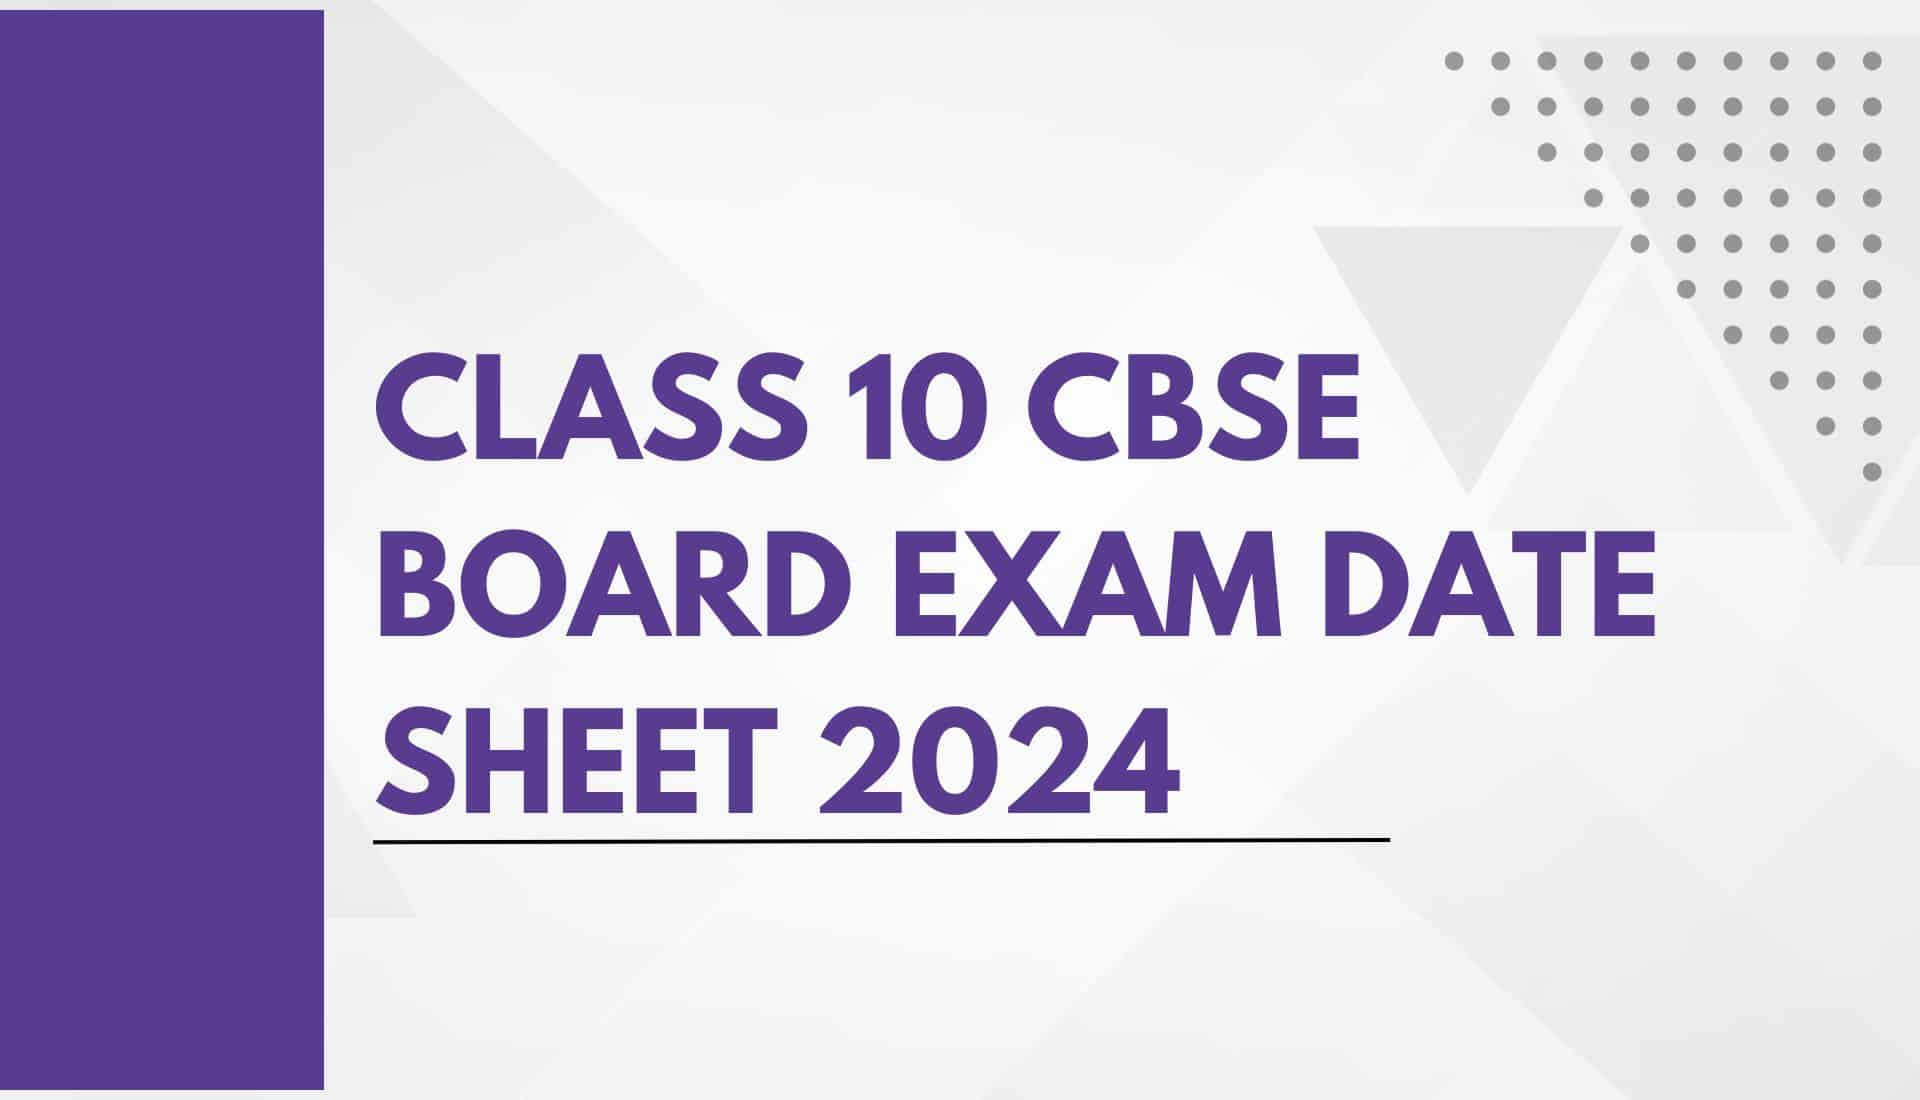 Class 10 CBSE board exam date sheet 2024